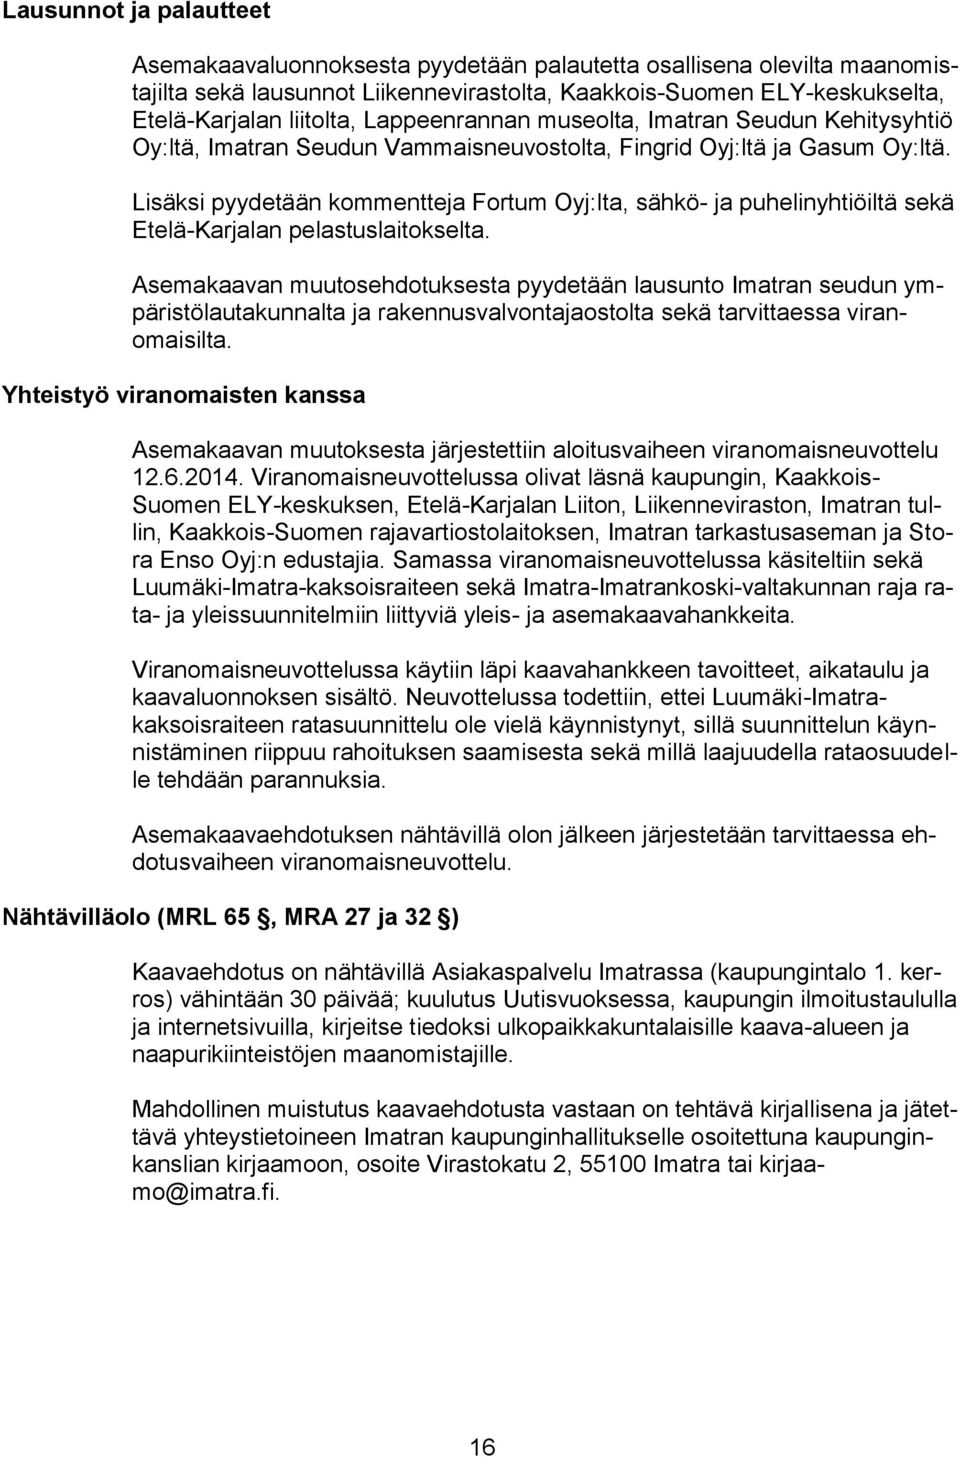 Lisäksi pyydetään kommentteja Fortum Oyj:lta, sähkö- ja puhelinyhtiöiltä sekä Etelä-Karjalan pelastuslaitokselta.